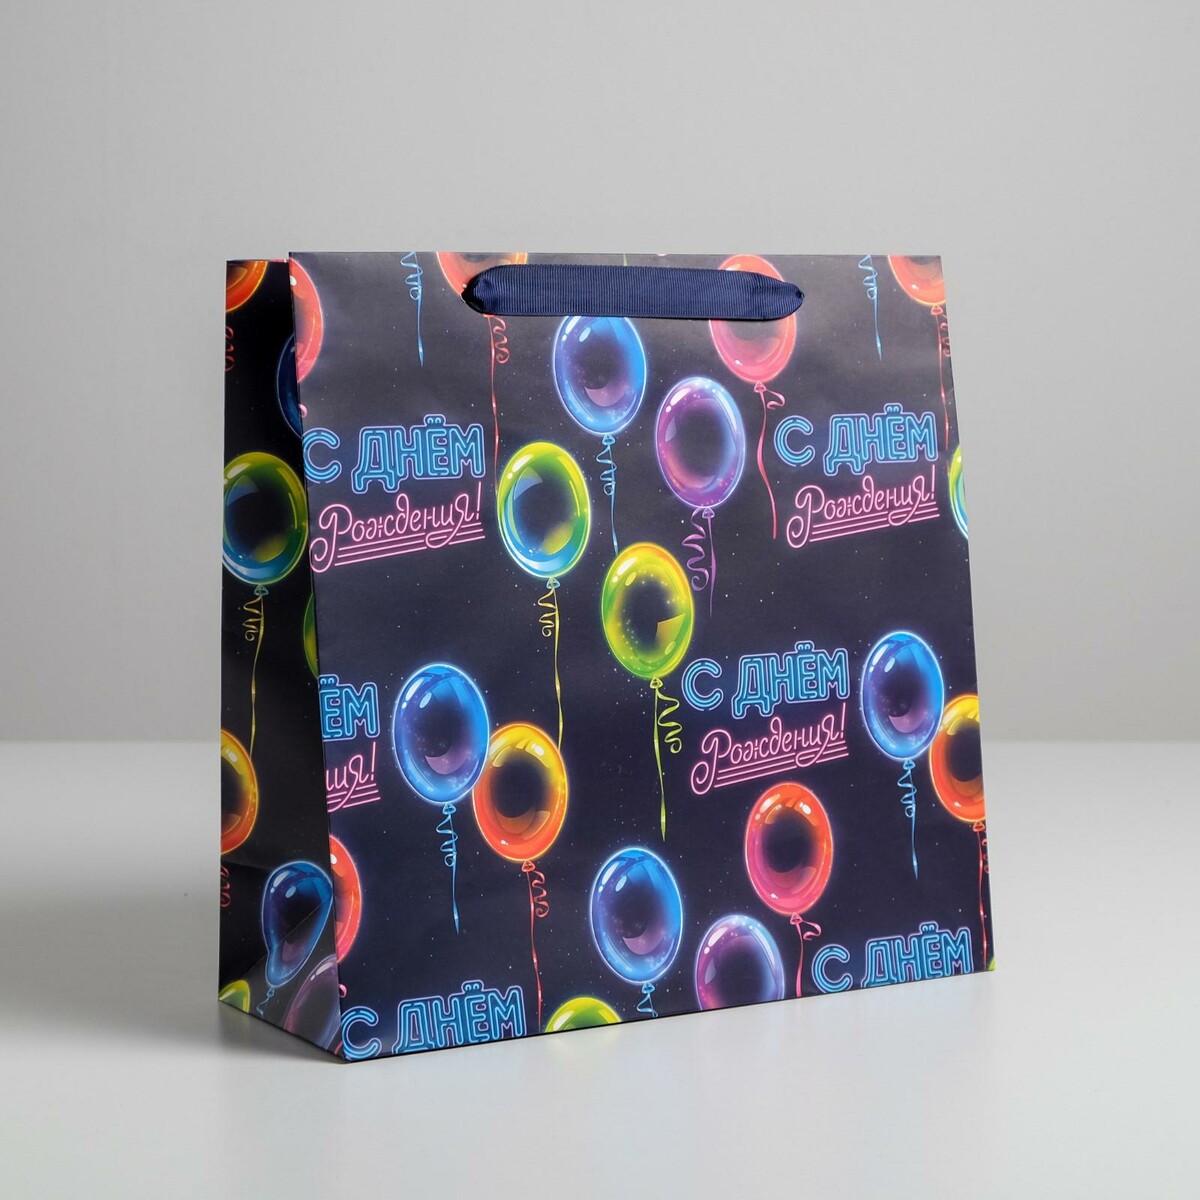 Пакет ламинированный квадратный с днем рождения!, 30 × 30 × 12 см шар 46 см с днем рождения круги разноцветные фольгированый